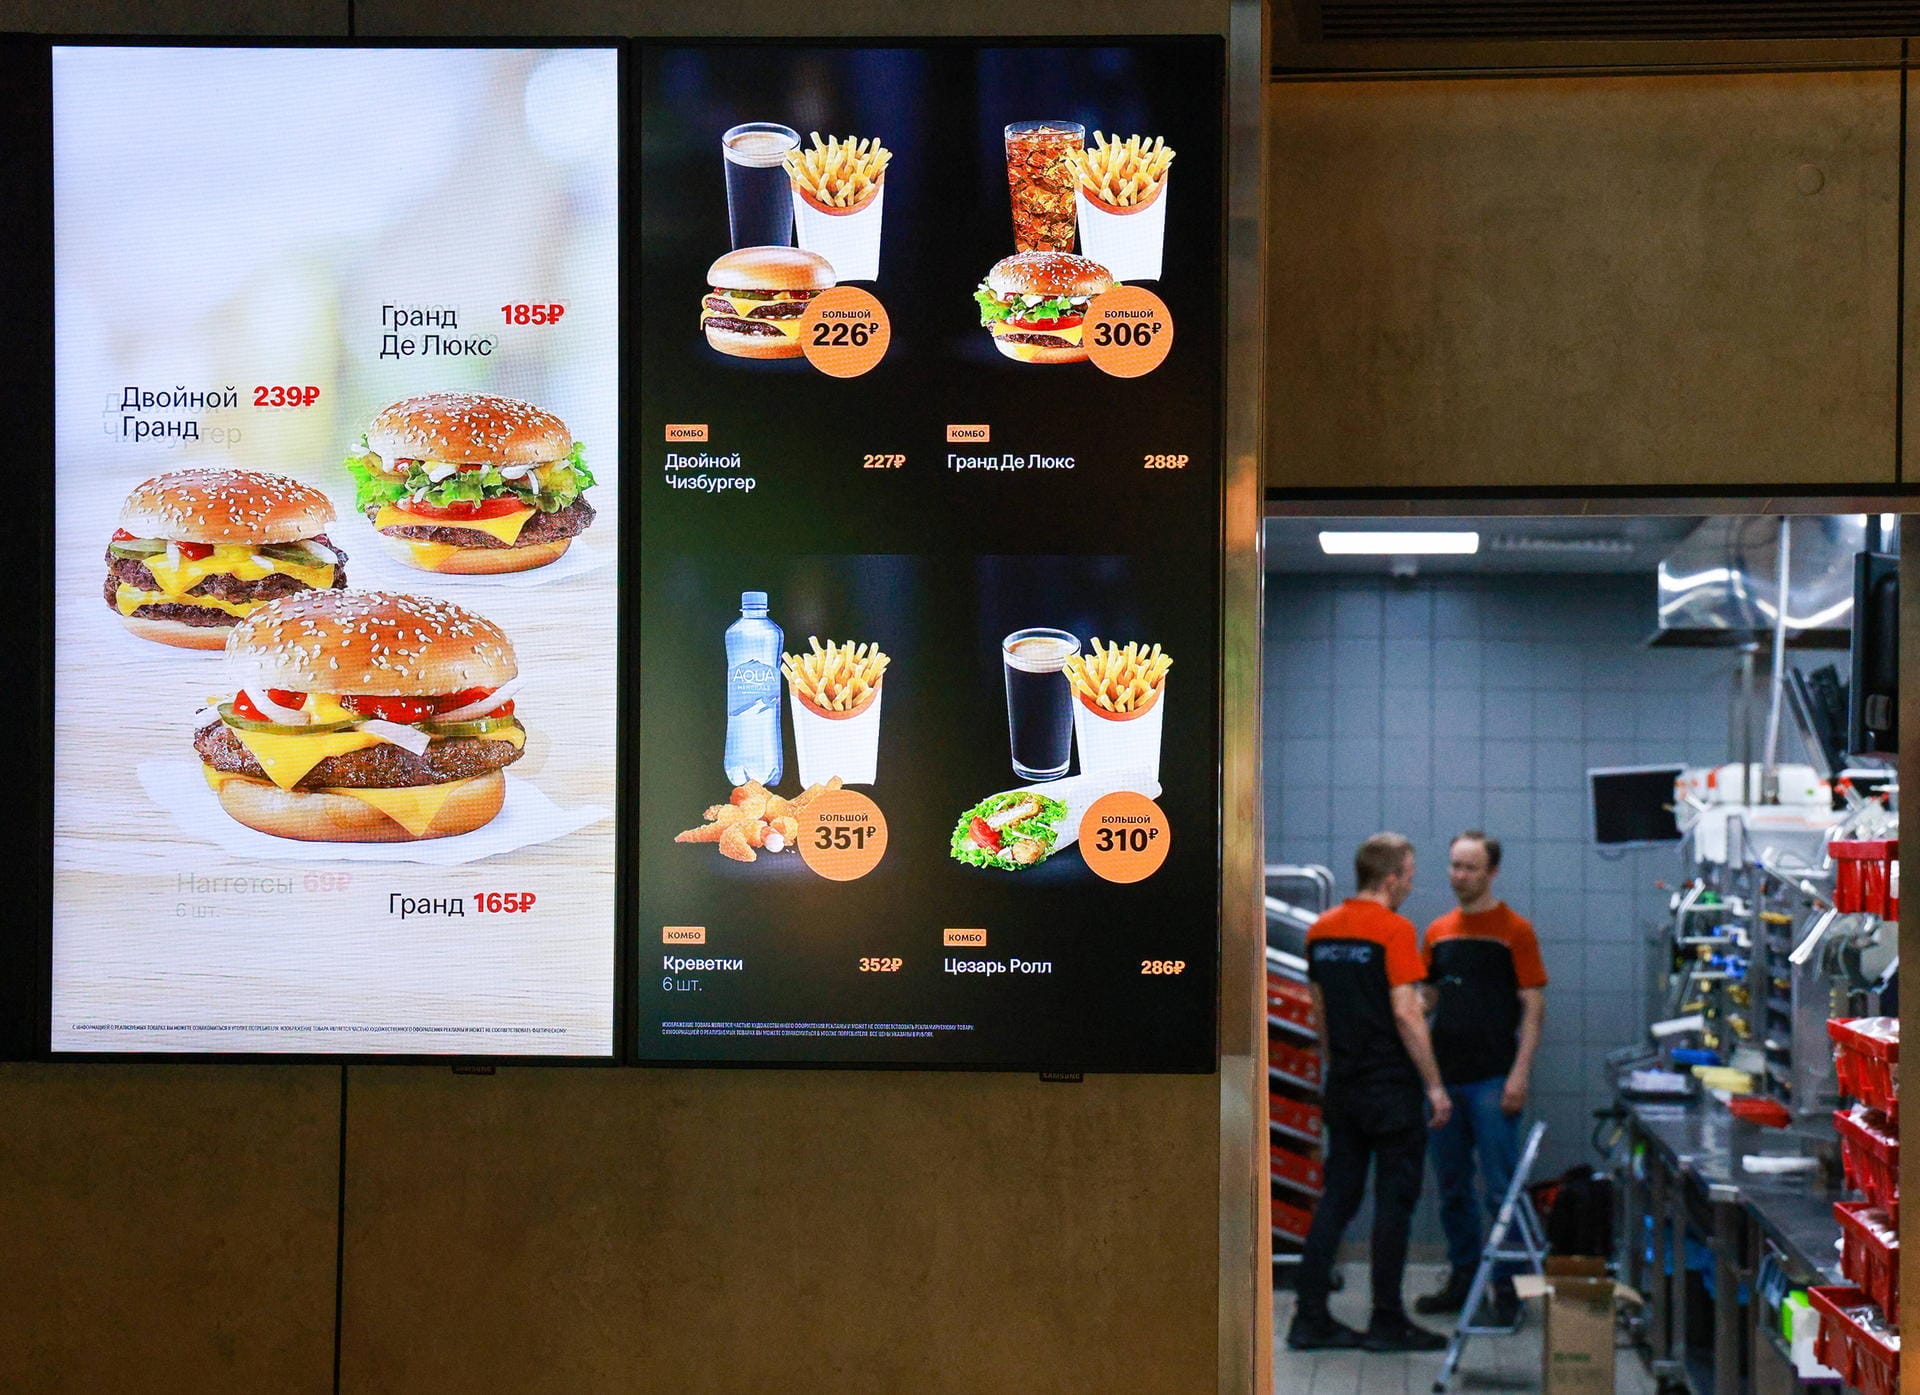 Das Menü ähnelt sehr dem von McDonald's, das Burgerangebot bleibt weitgehend gleich.